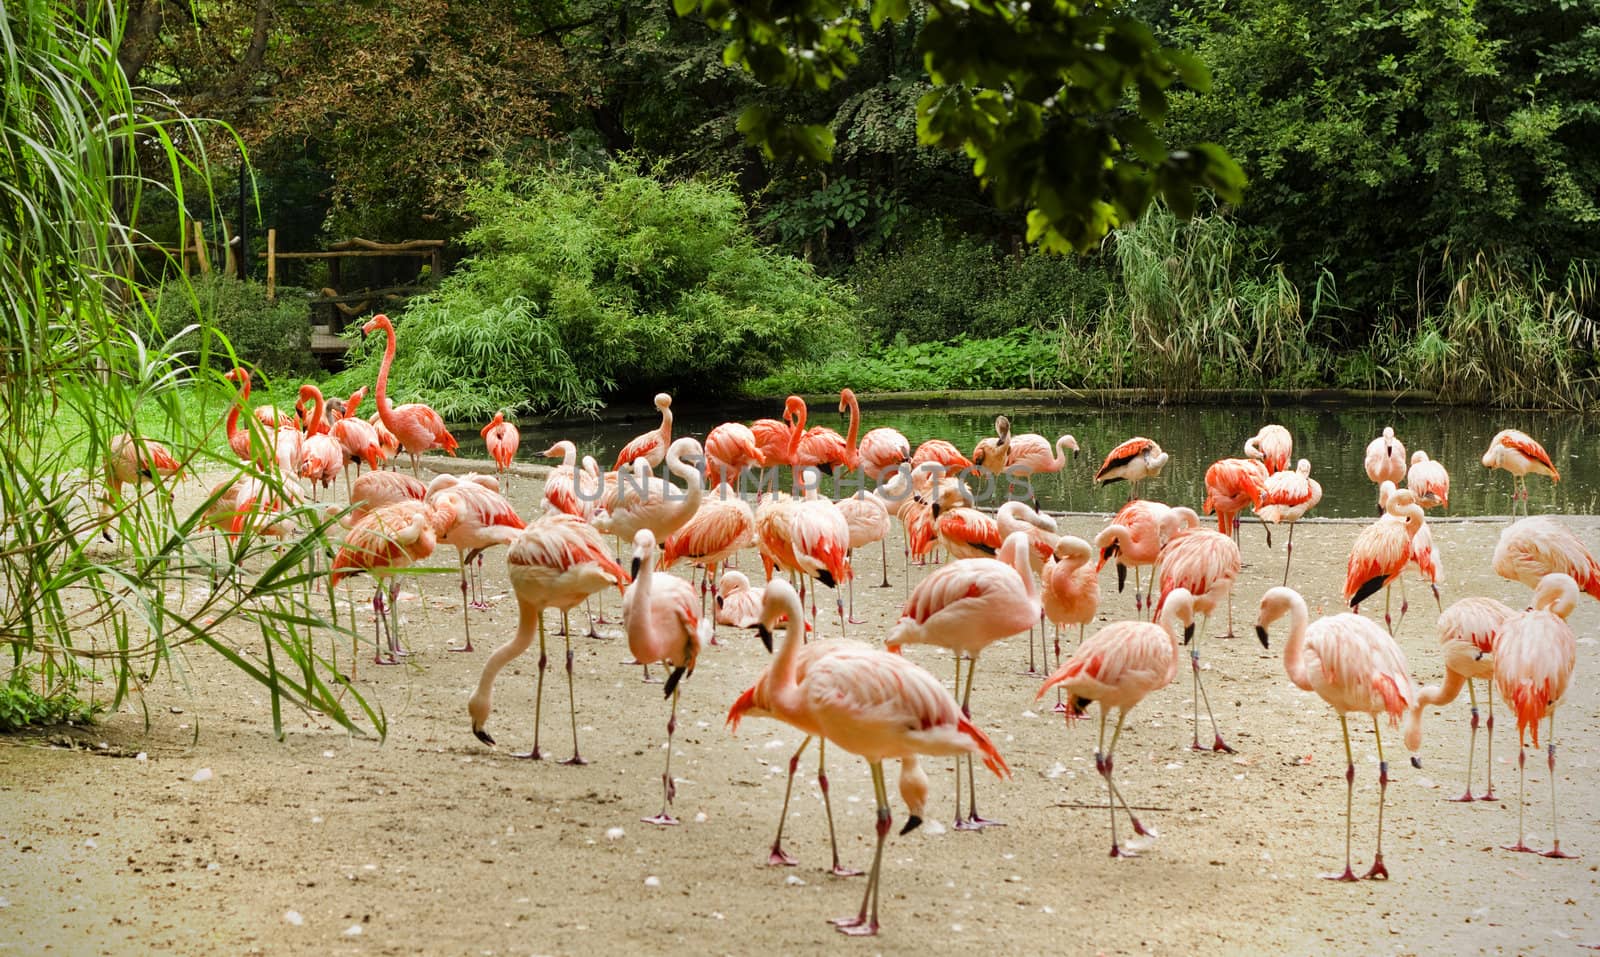 Caribbean flamingos by Kristina_Usoltseva